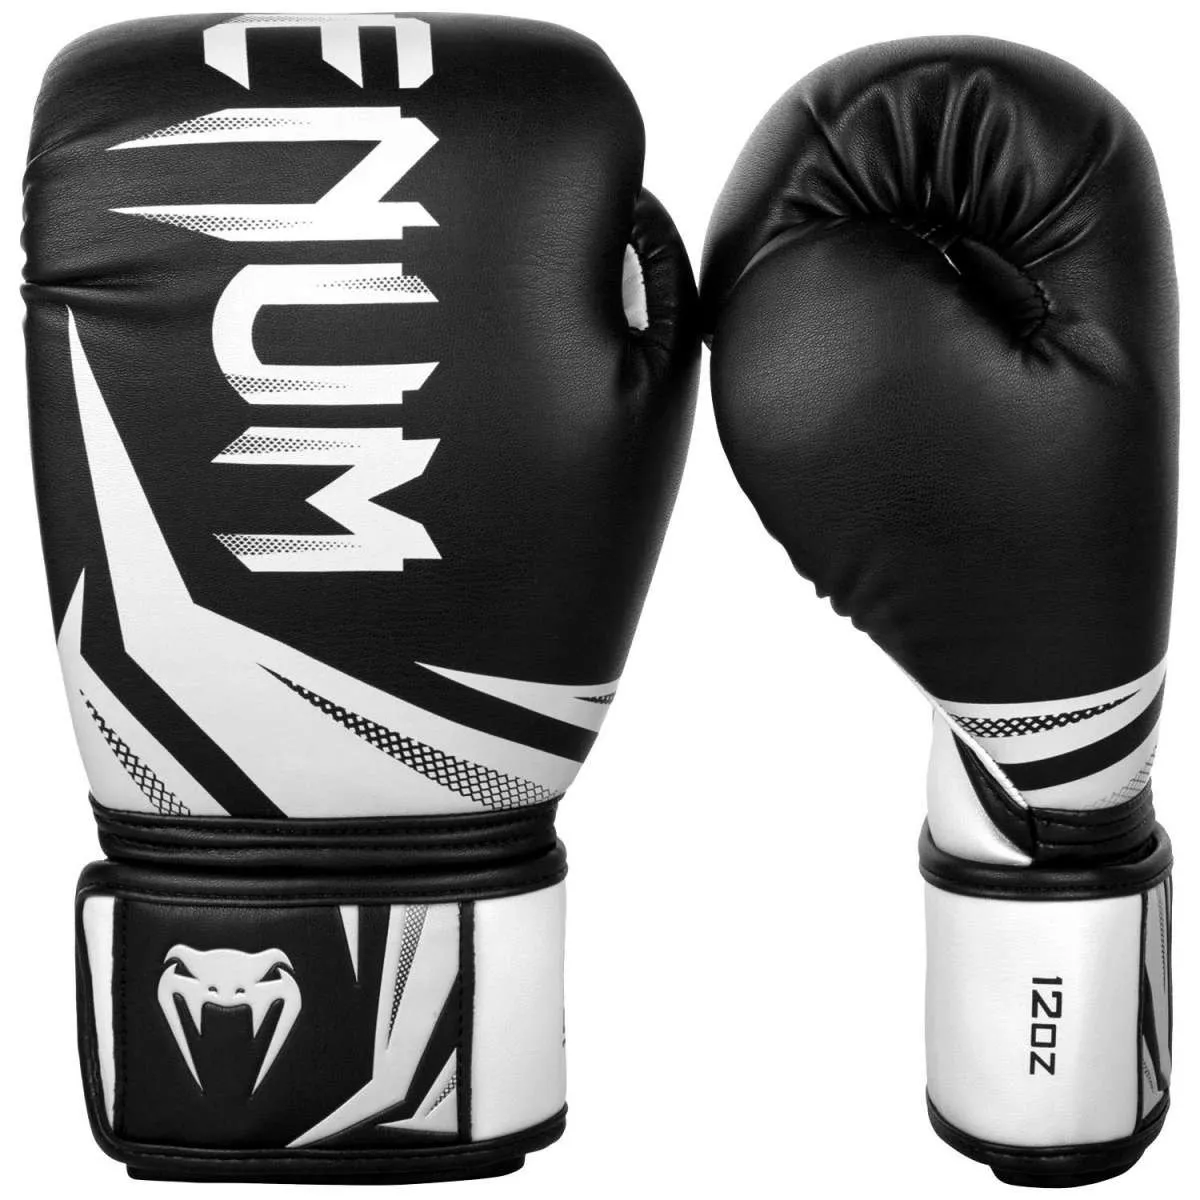 Gants de boxe Venum Challenger 3.0 noir/orGants de boxe Venum Challenger 3.0 noir/blanc